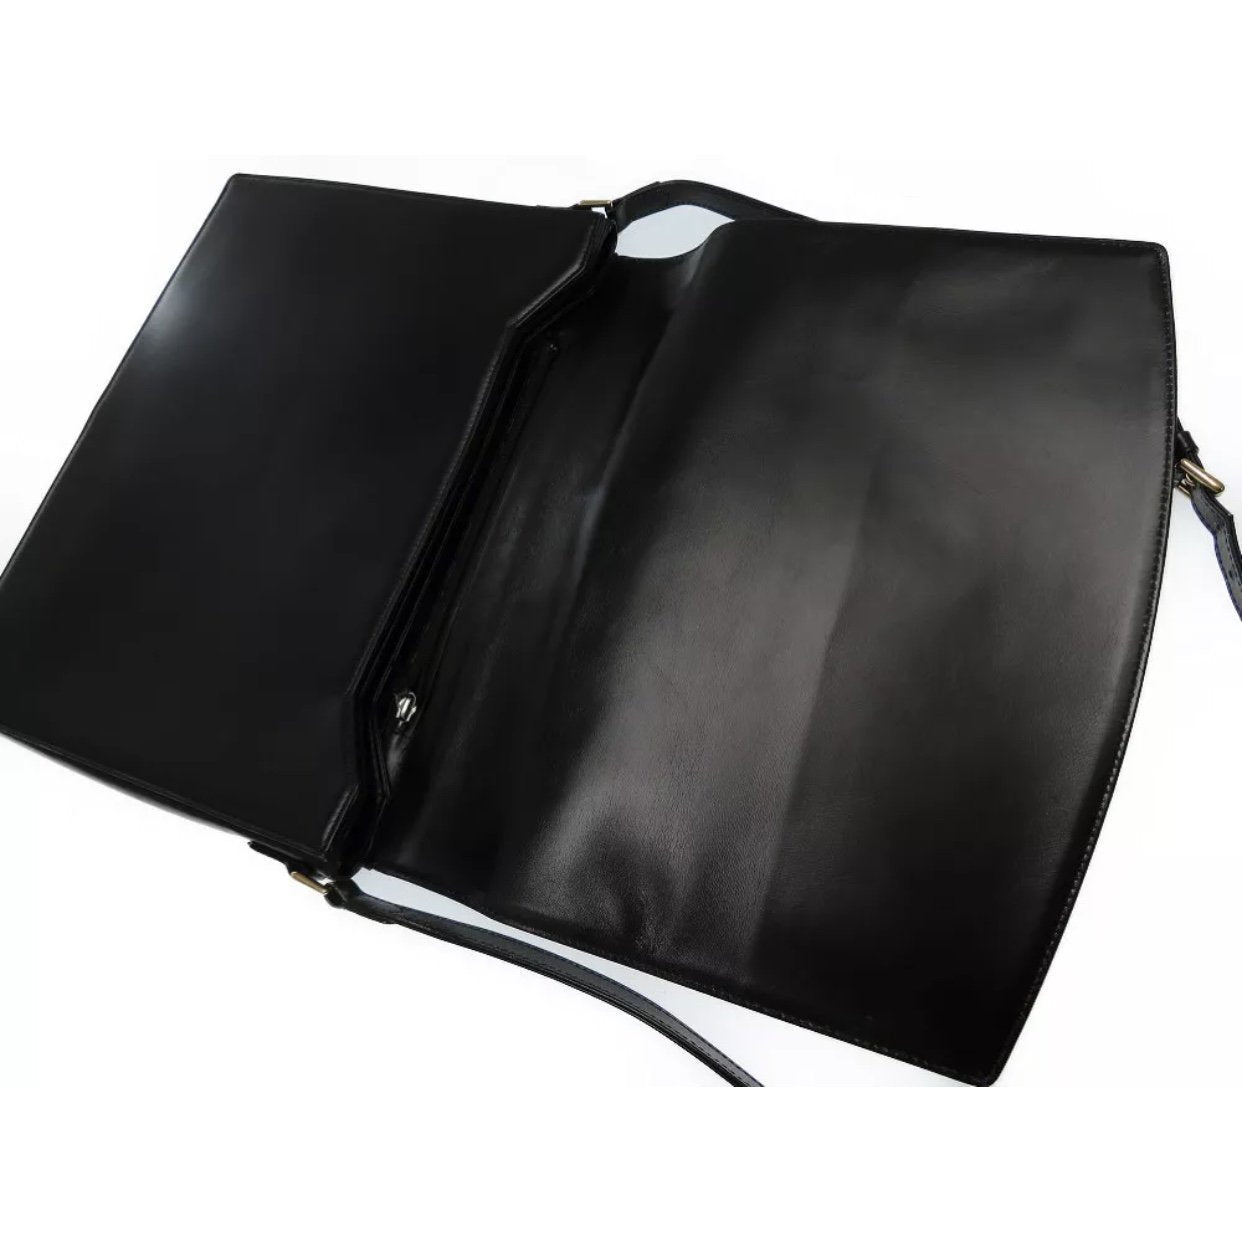 Buy Authentic Pre-owned Louis Vuitton Lv Epi Black Noir Verseau Shoulder  Bag Purse M52812 220029 from Japan - Buy authentic Plus exclusive items  from Japan